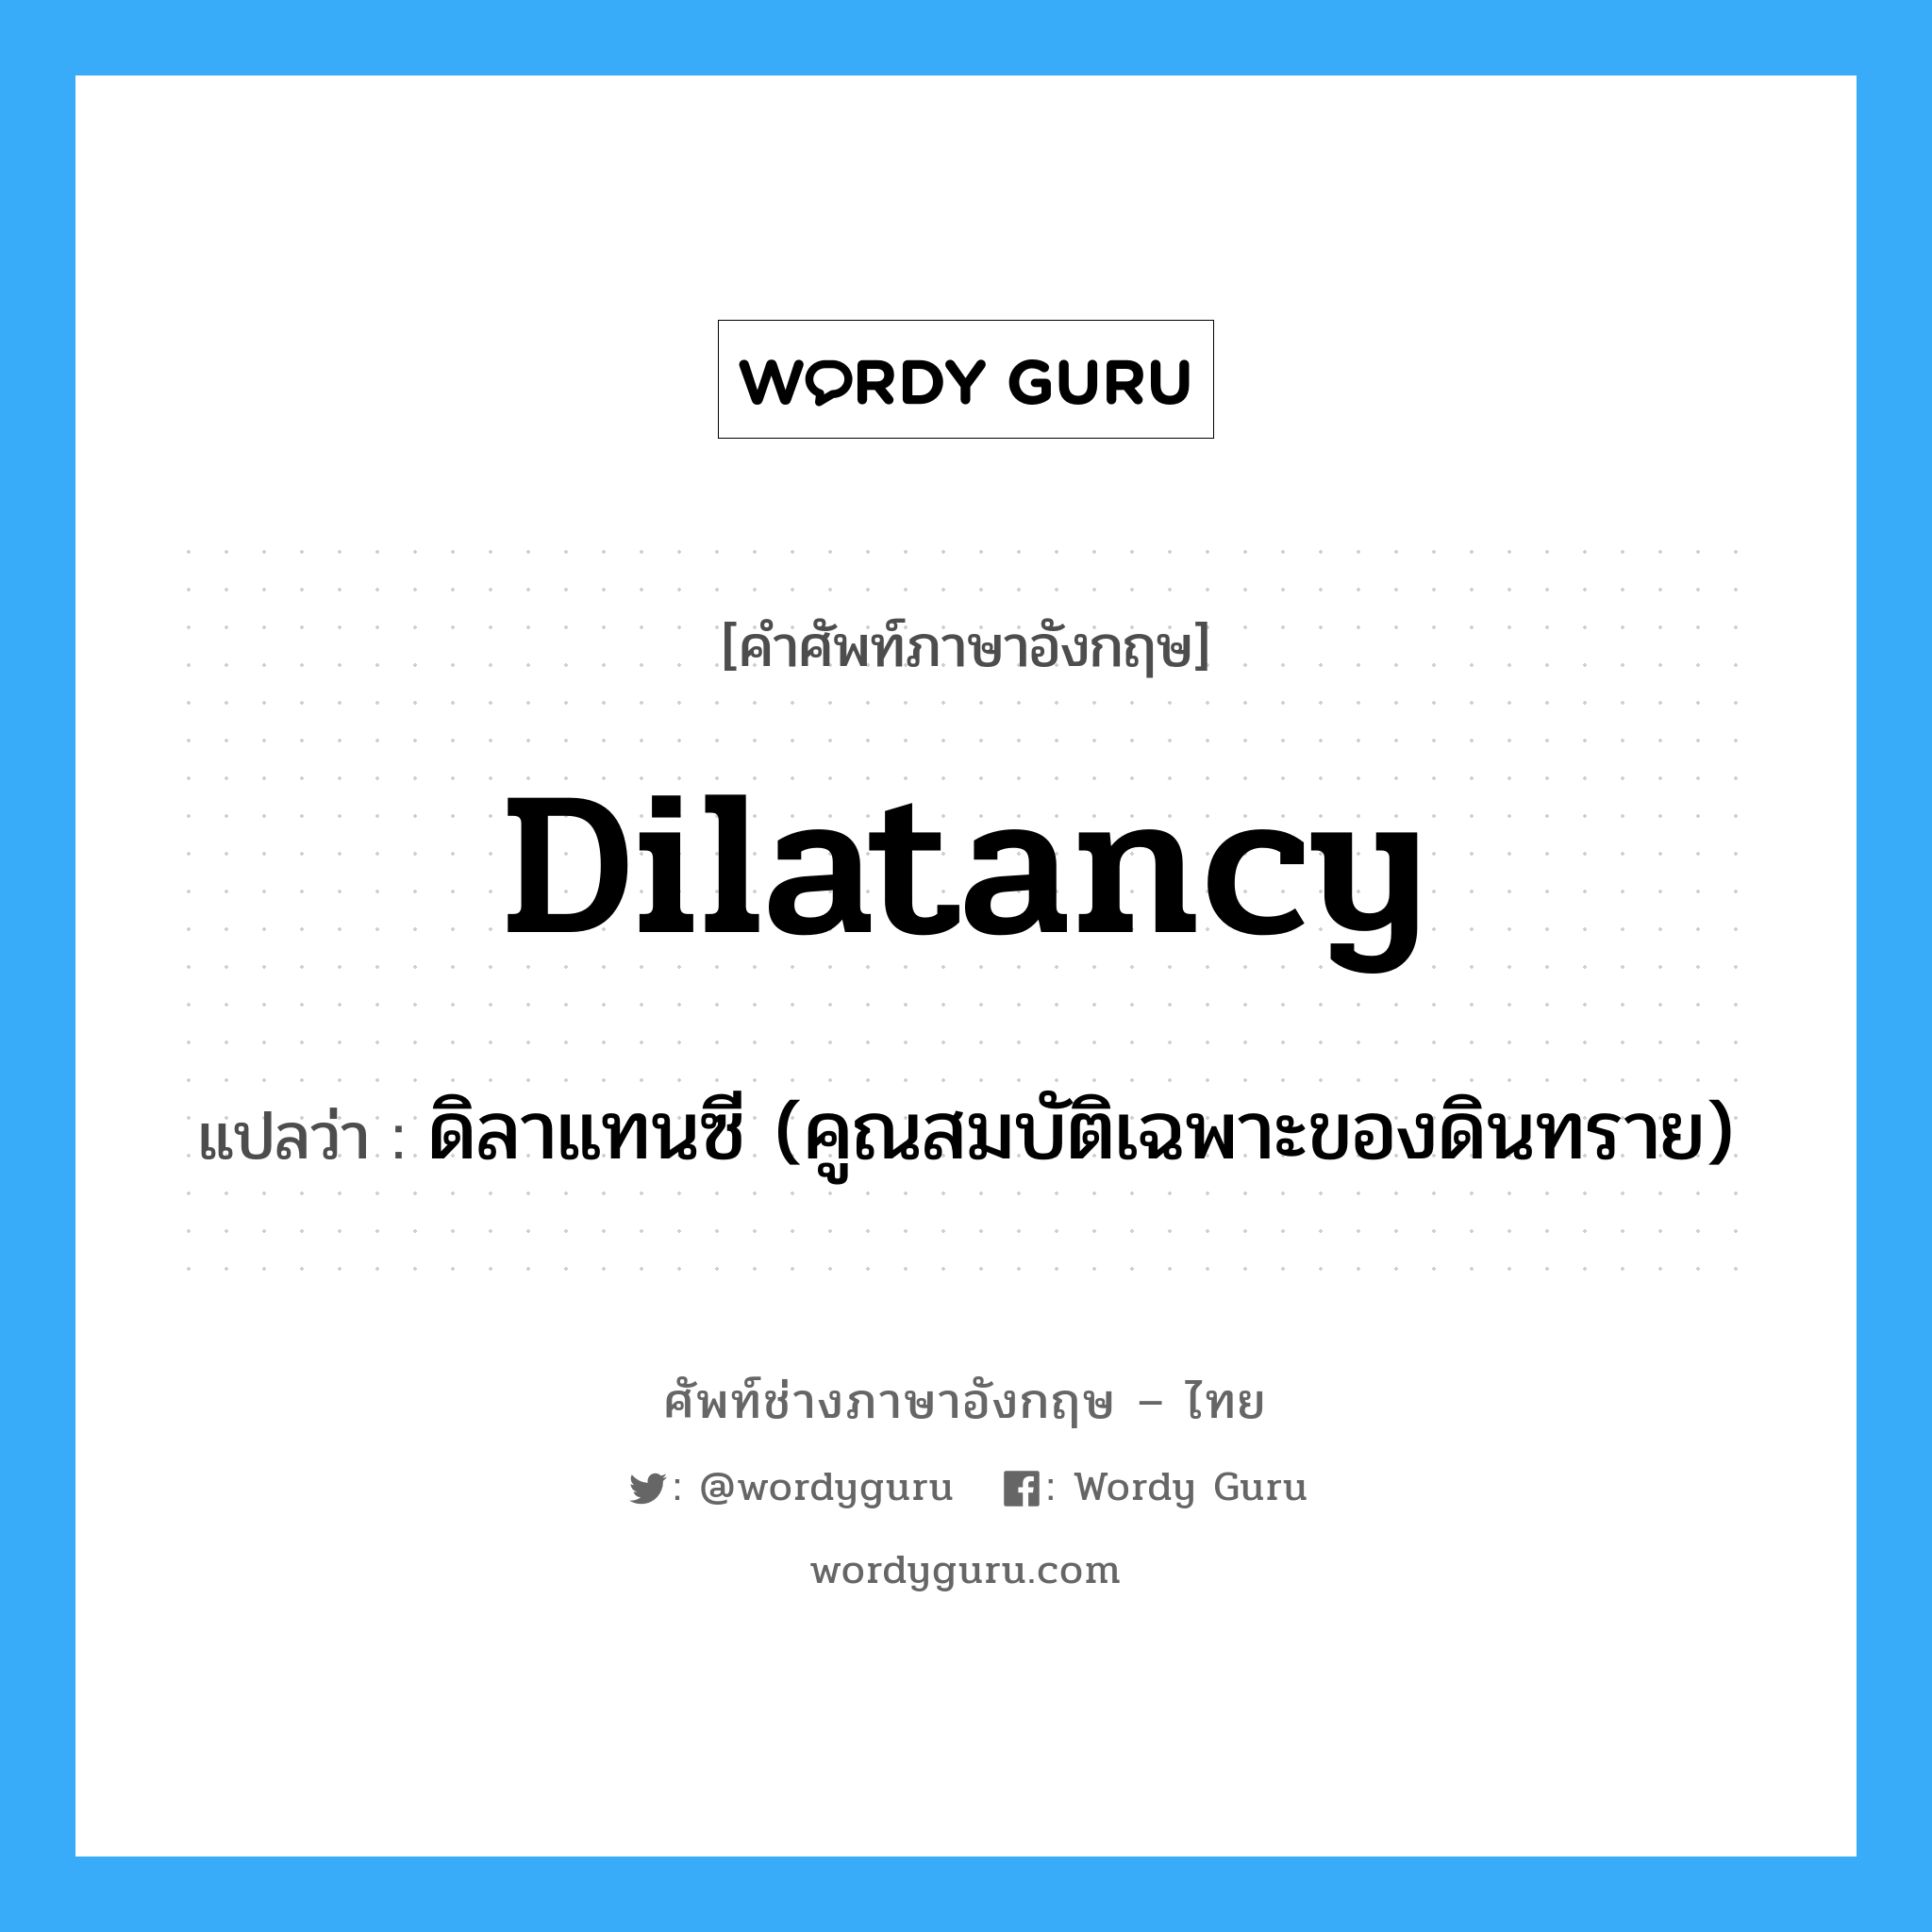 dilatancy แปลว่า?, คำศัพท์ช่างภาษาอังกฤษ - ไทย dilatancy คำศัพท์ภาษาอังกฤษ dilatancy แปลว่า ดิลาแทนซี (คูณสมบัติเฉพาะของดินทราย)